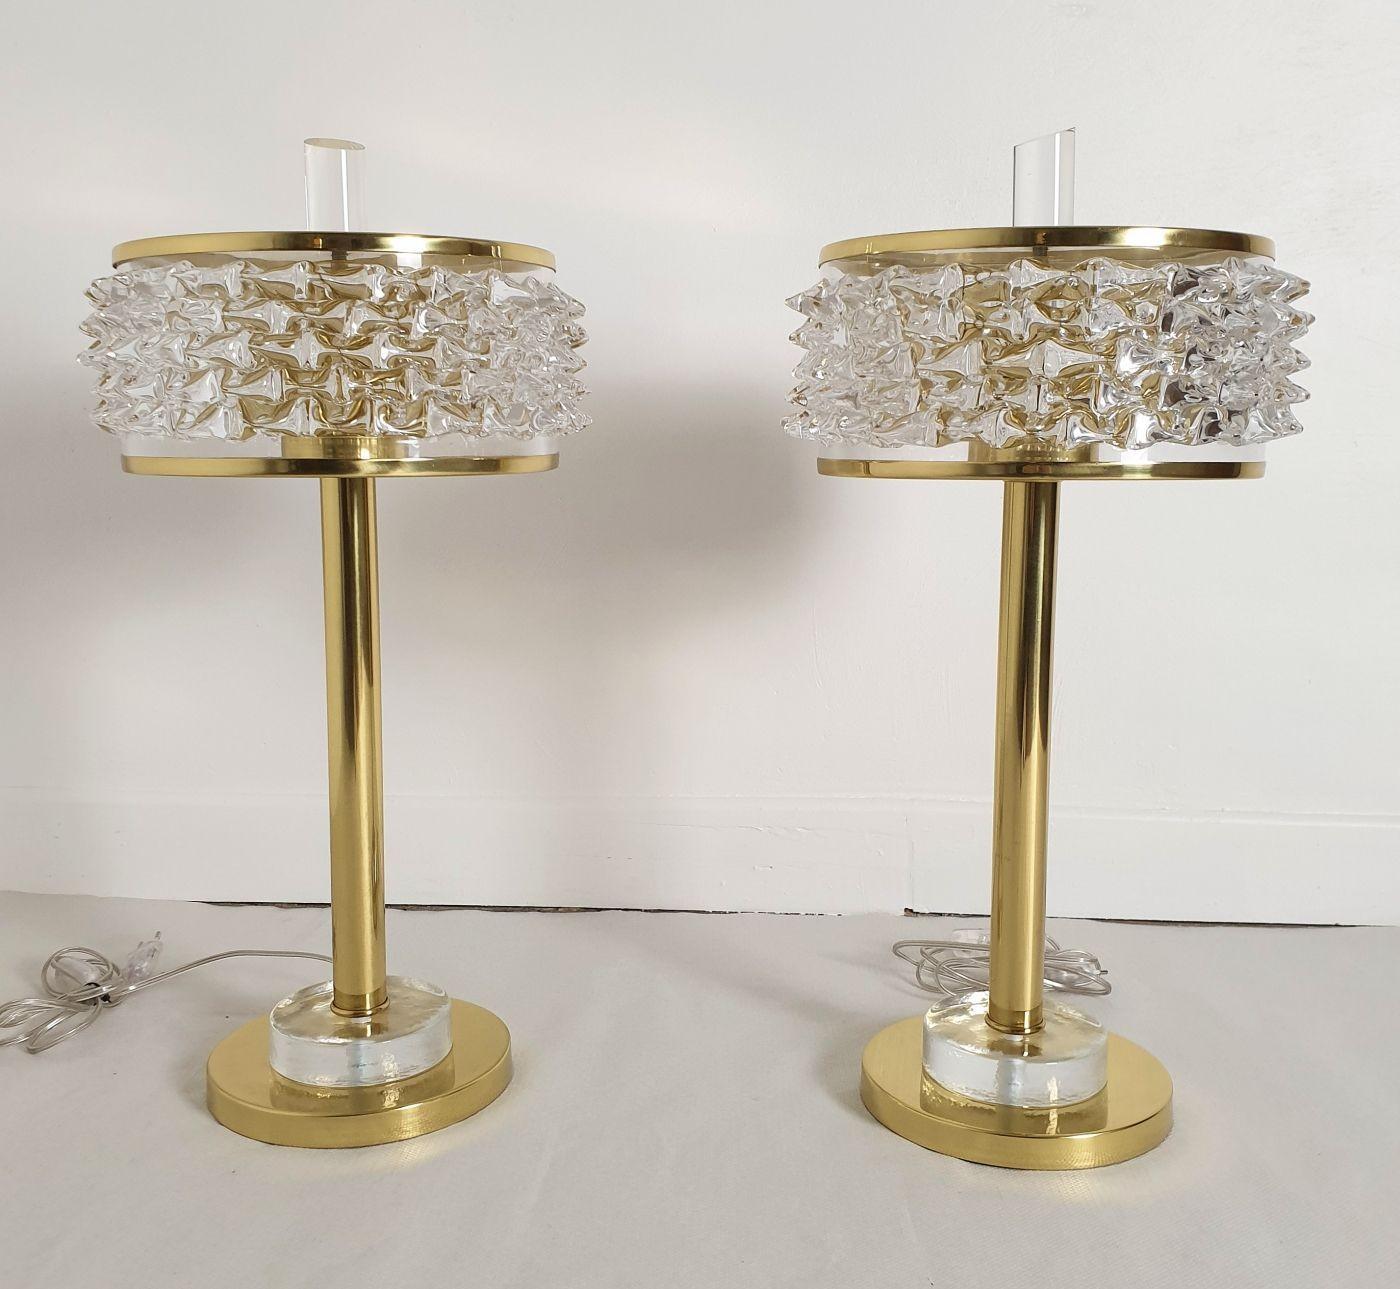 Paire de lampes de table ou de bureau de style moderne du milieu du siècle dernier, Italie, années 1970.
Les lampes sont composées de laiton poli et d'abat-jours translucides très épais en verre de Murano Rostrato fabriqués à la main.
Le diamètre de